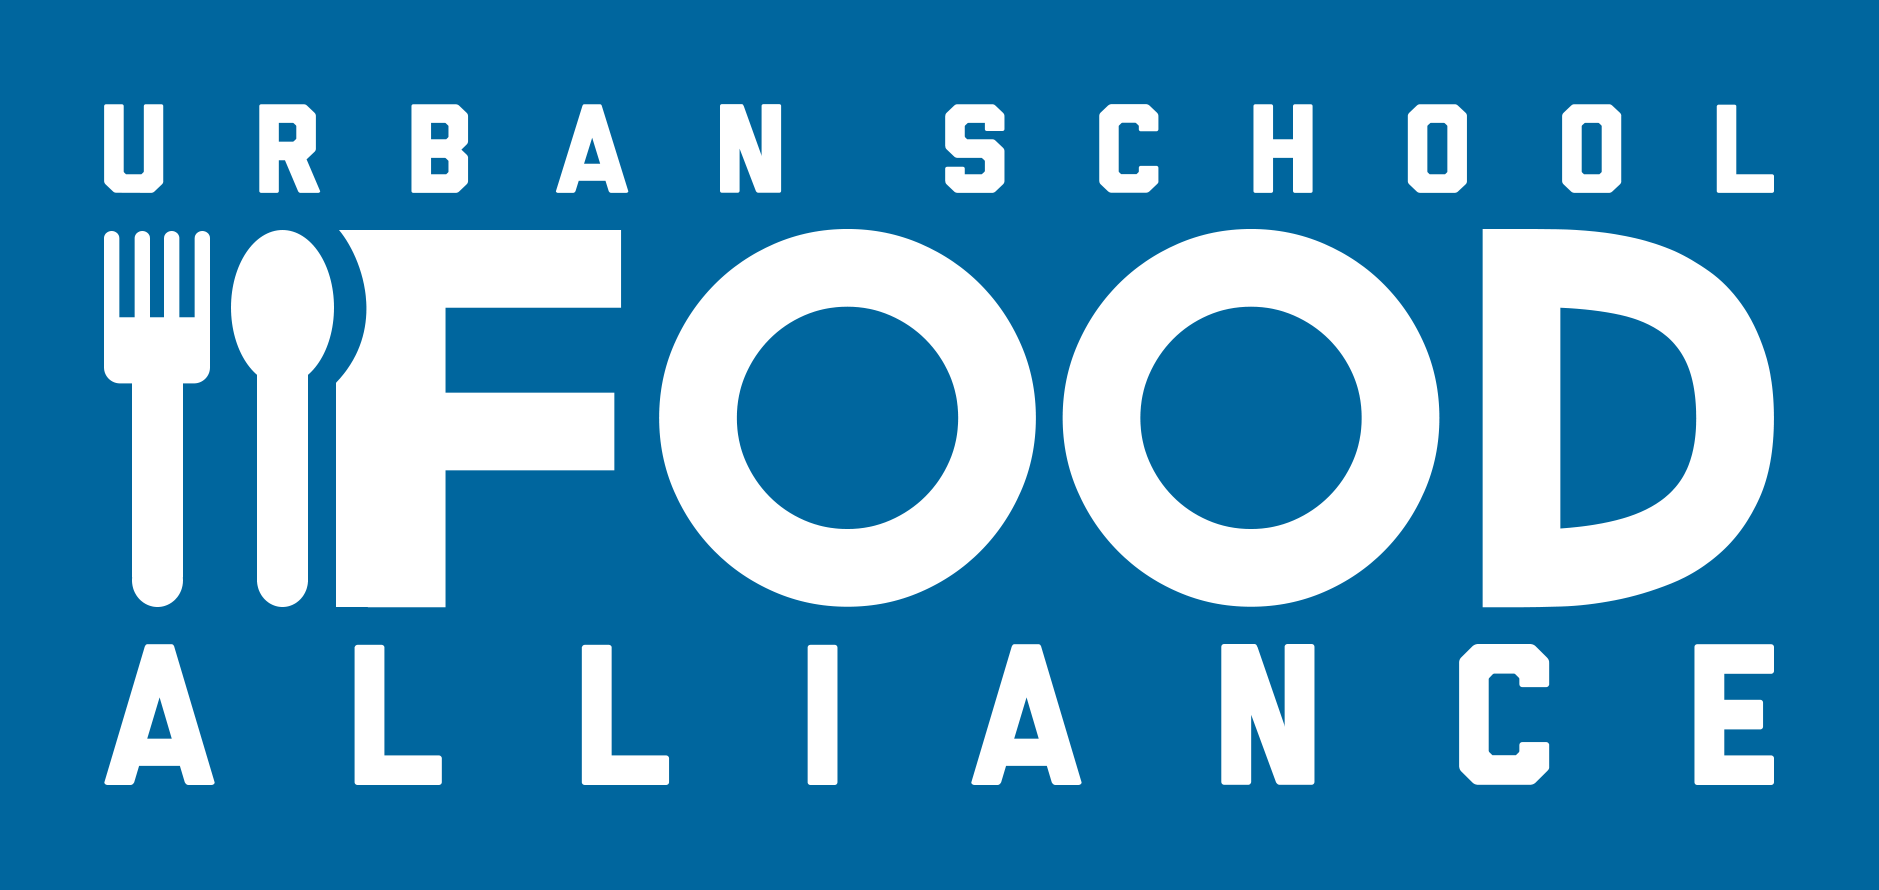 Urban School Food Alliance logo